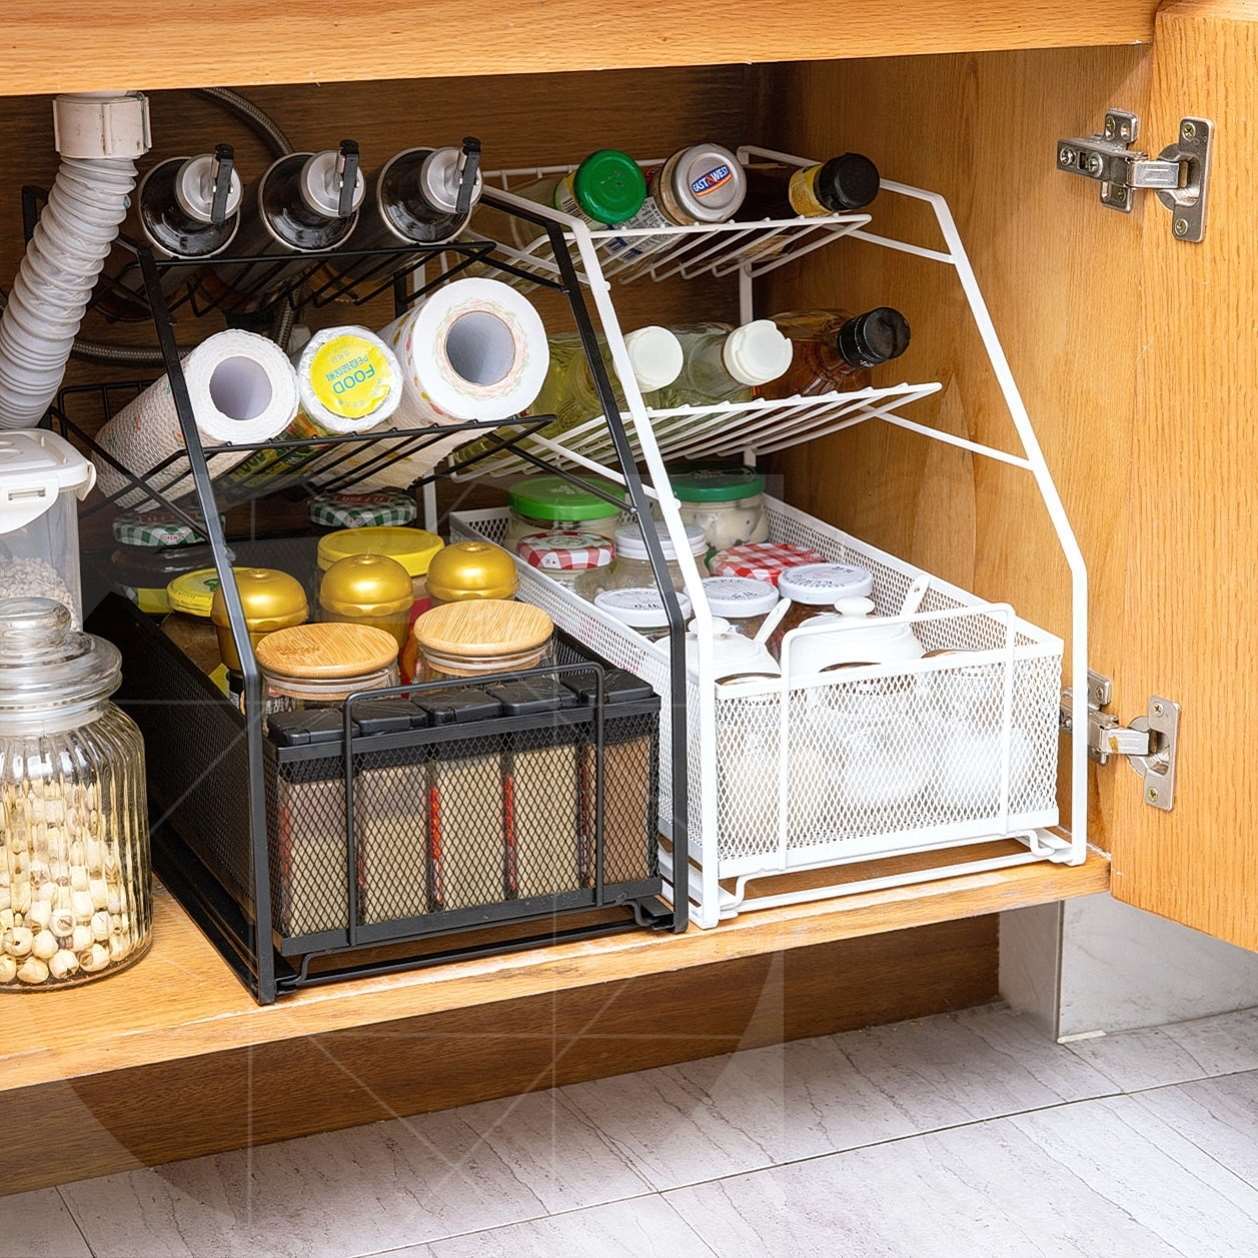 廚房收納架 廚房下水槽置物架推拉抽屜式調料架子伸縮分層衛生間用品收納神器-快速出貨